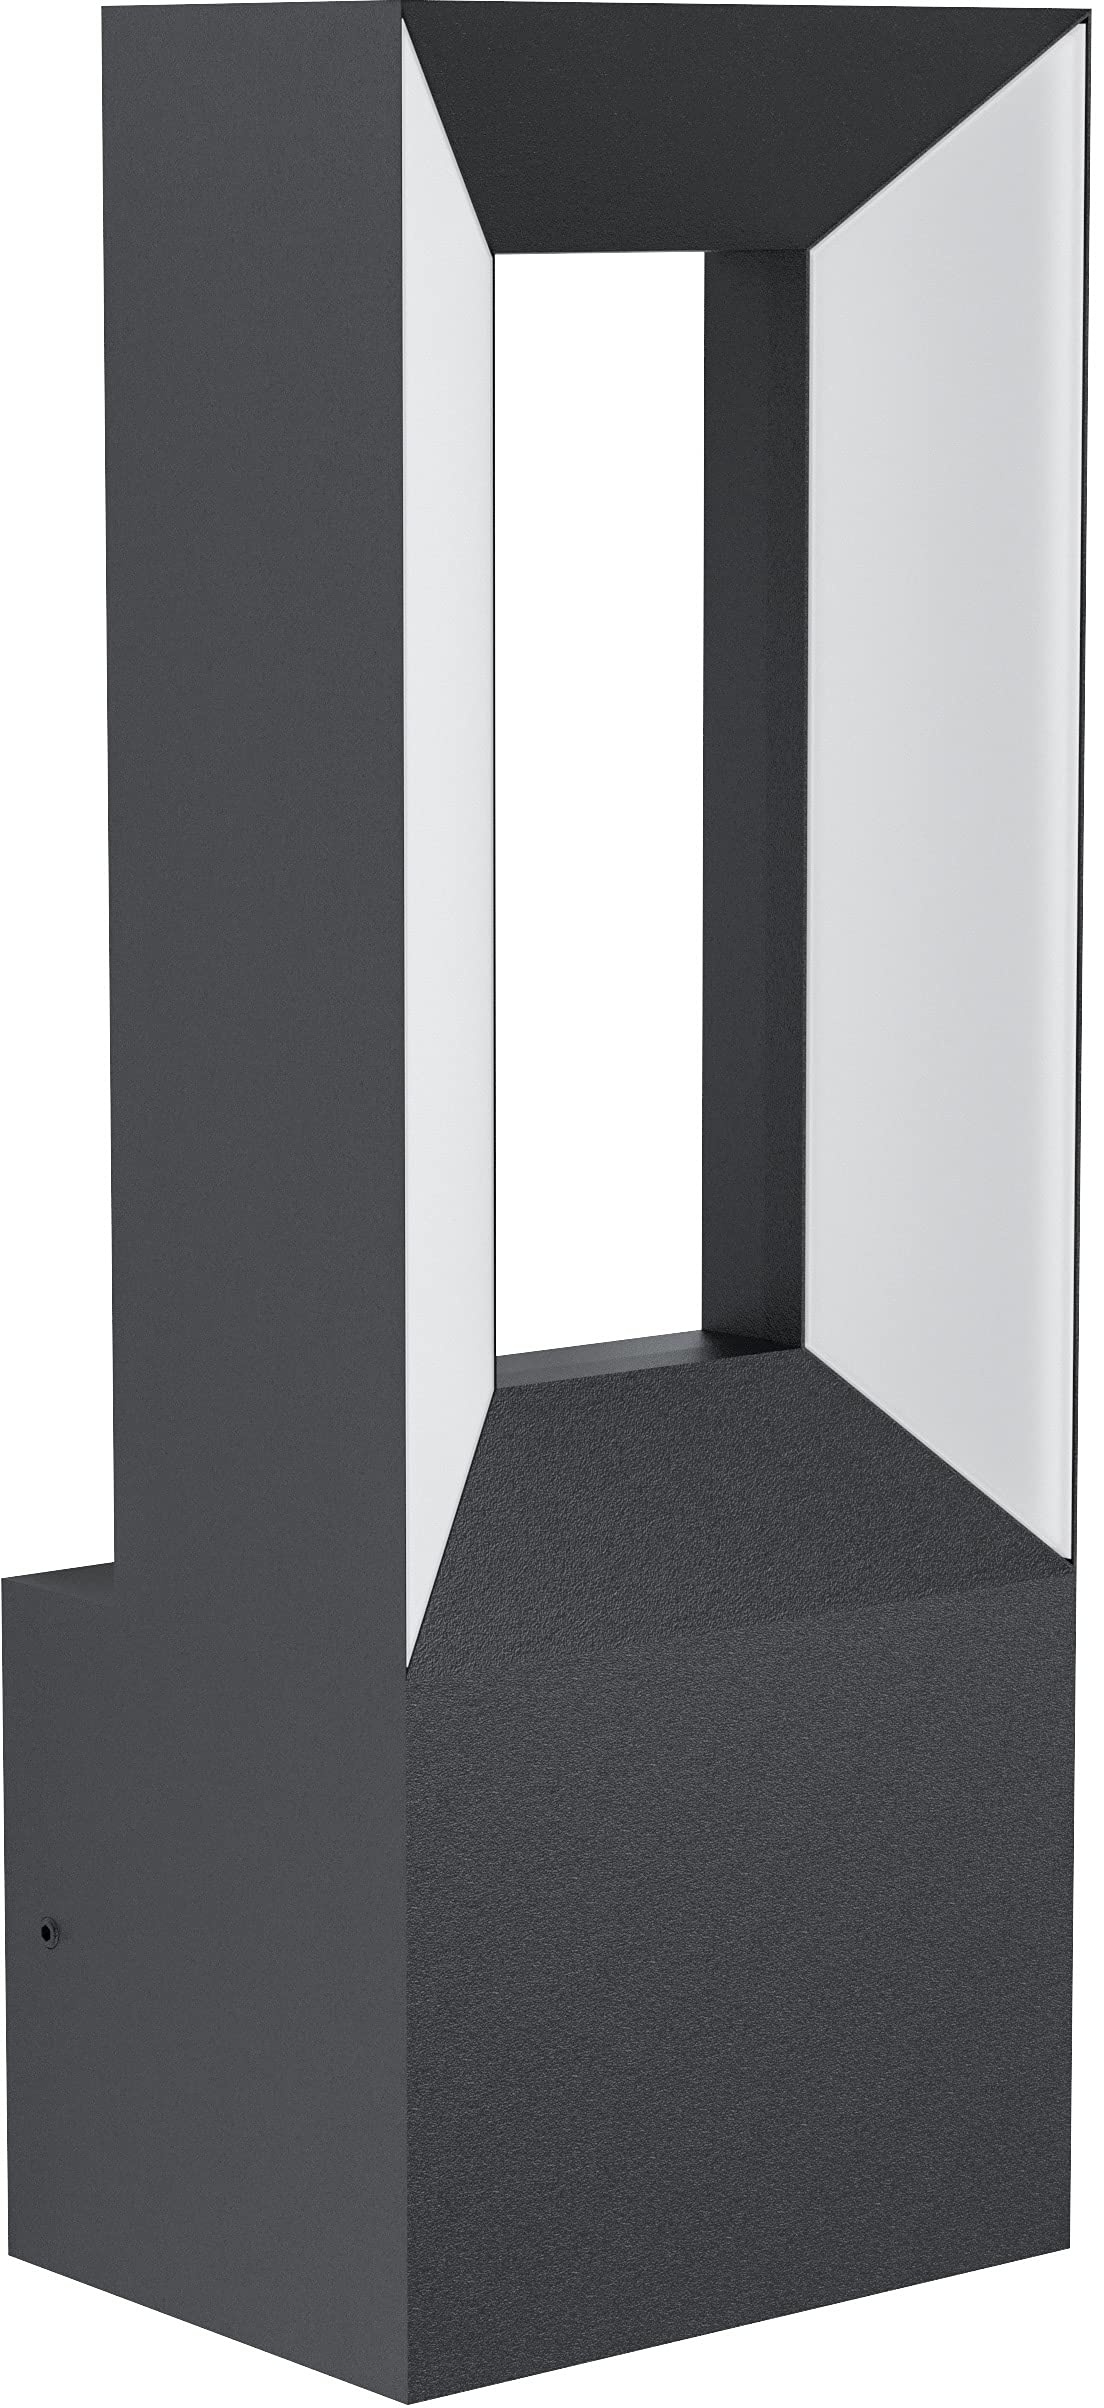 EGLO LED Außen Wandlampe Riforano, Außenleuchte aus Aluminium-Guss und Kunststoff, Wandleuchte in Schwarz und Weiß, LED Außenlampe warmweiß, IP44